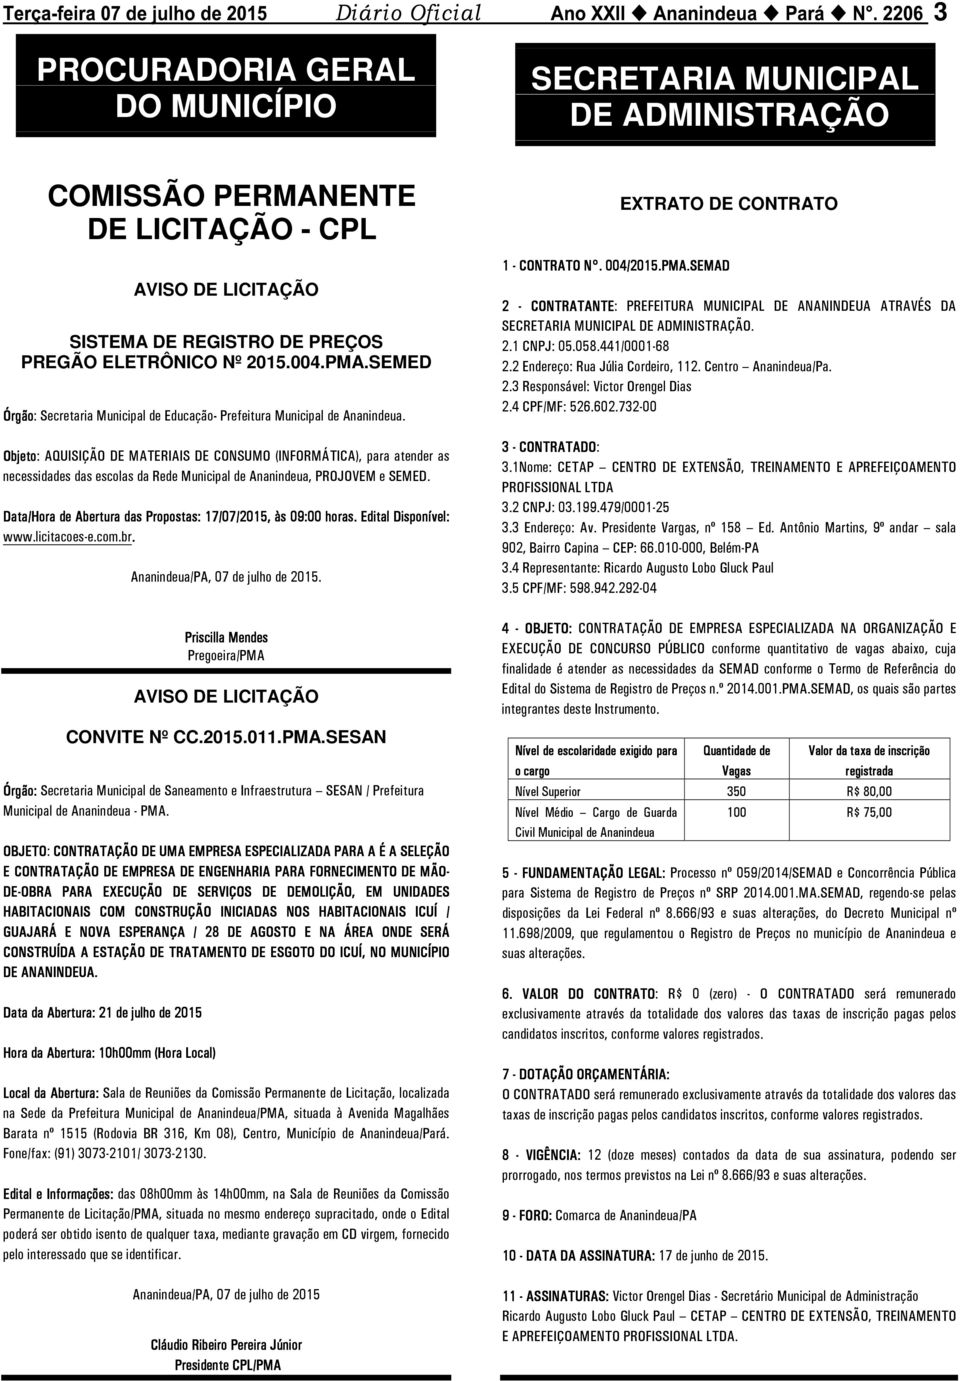 Objeto: AQUISIÇÃO DE MATERIAIS DE CONSUMO (INFORMÁTICA), para atender as necessidades das escolas da Rede Municipal de Ananindeua, PROJOVEM e SEMED.